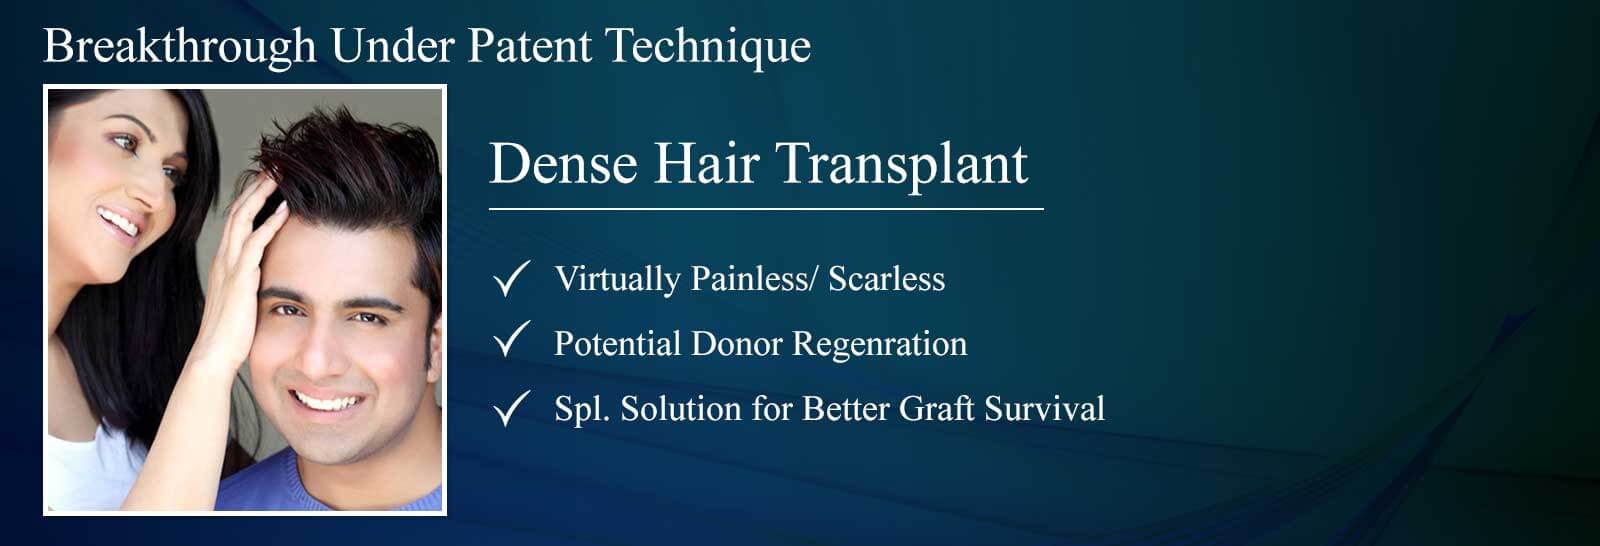 Dence Hair Transplant